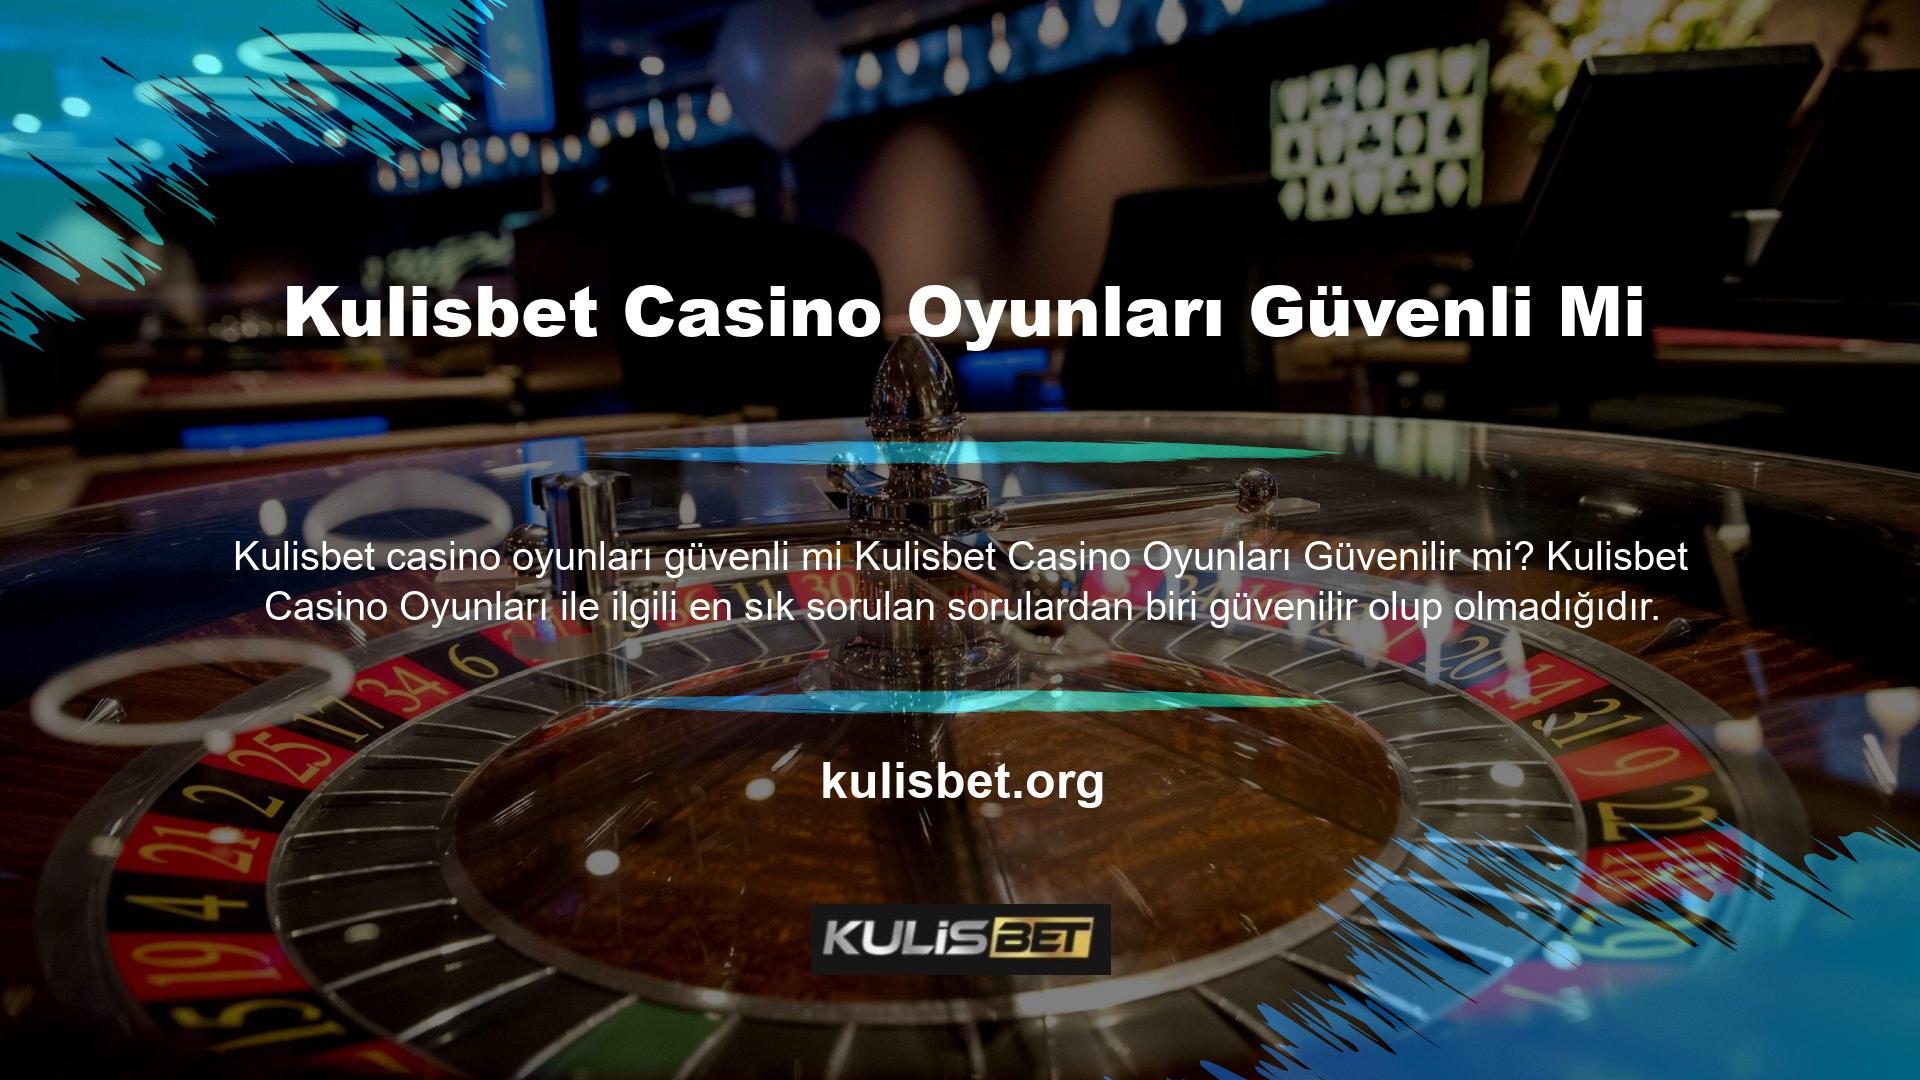 Bildiğiniz gibi birçok oyuncunun oynadığı canlı bahis sitelerinde casino oyunları da sunulmaktadır